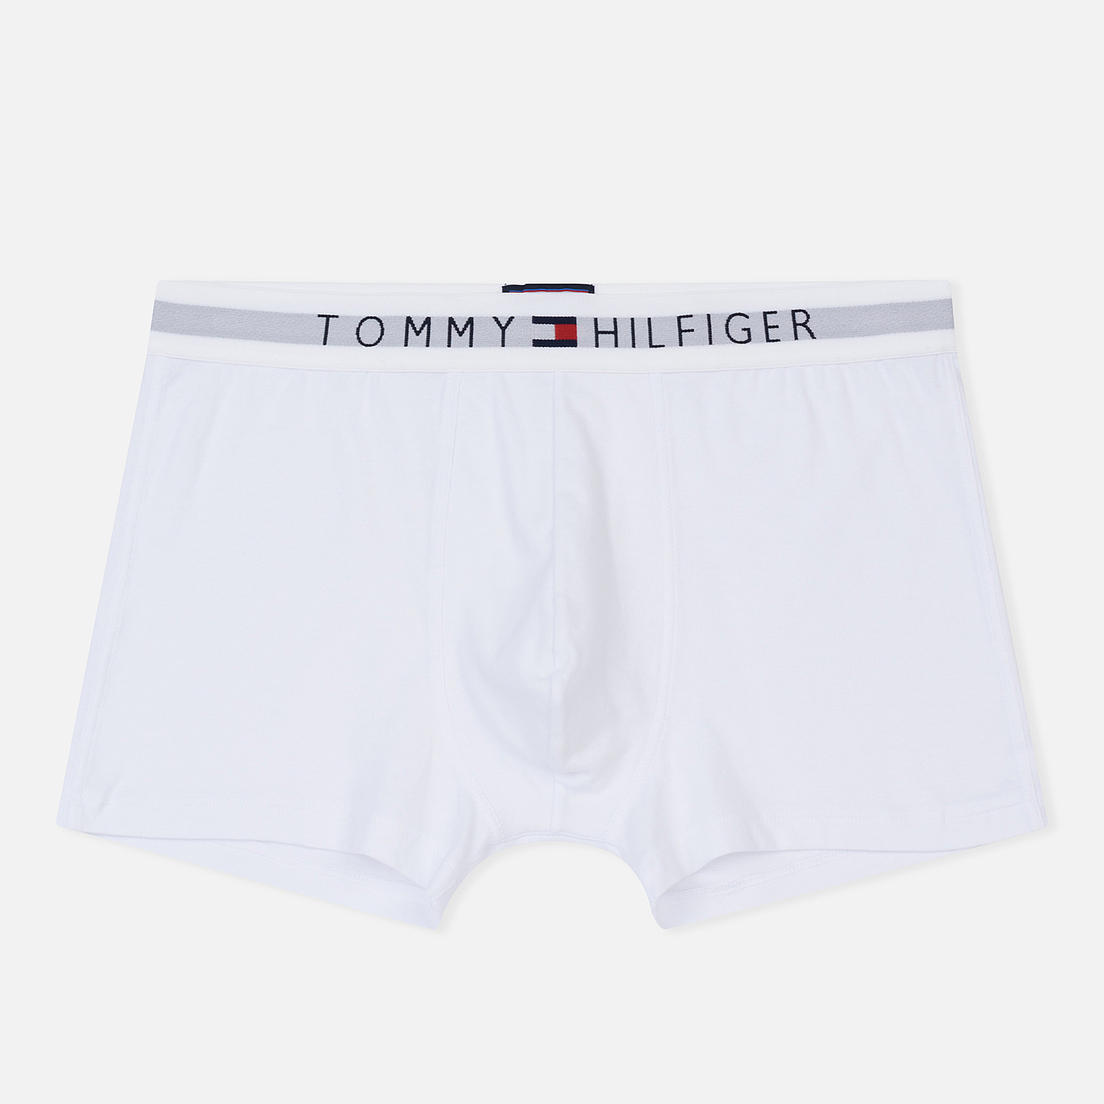 Tommy Hilfiger Underwear Мужские трусы Branded Cotton Boxer